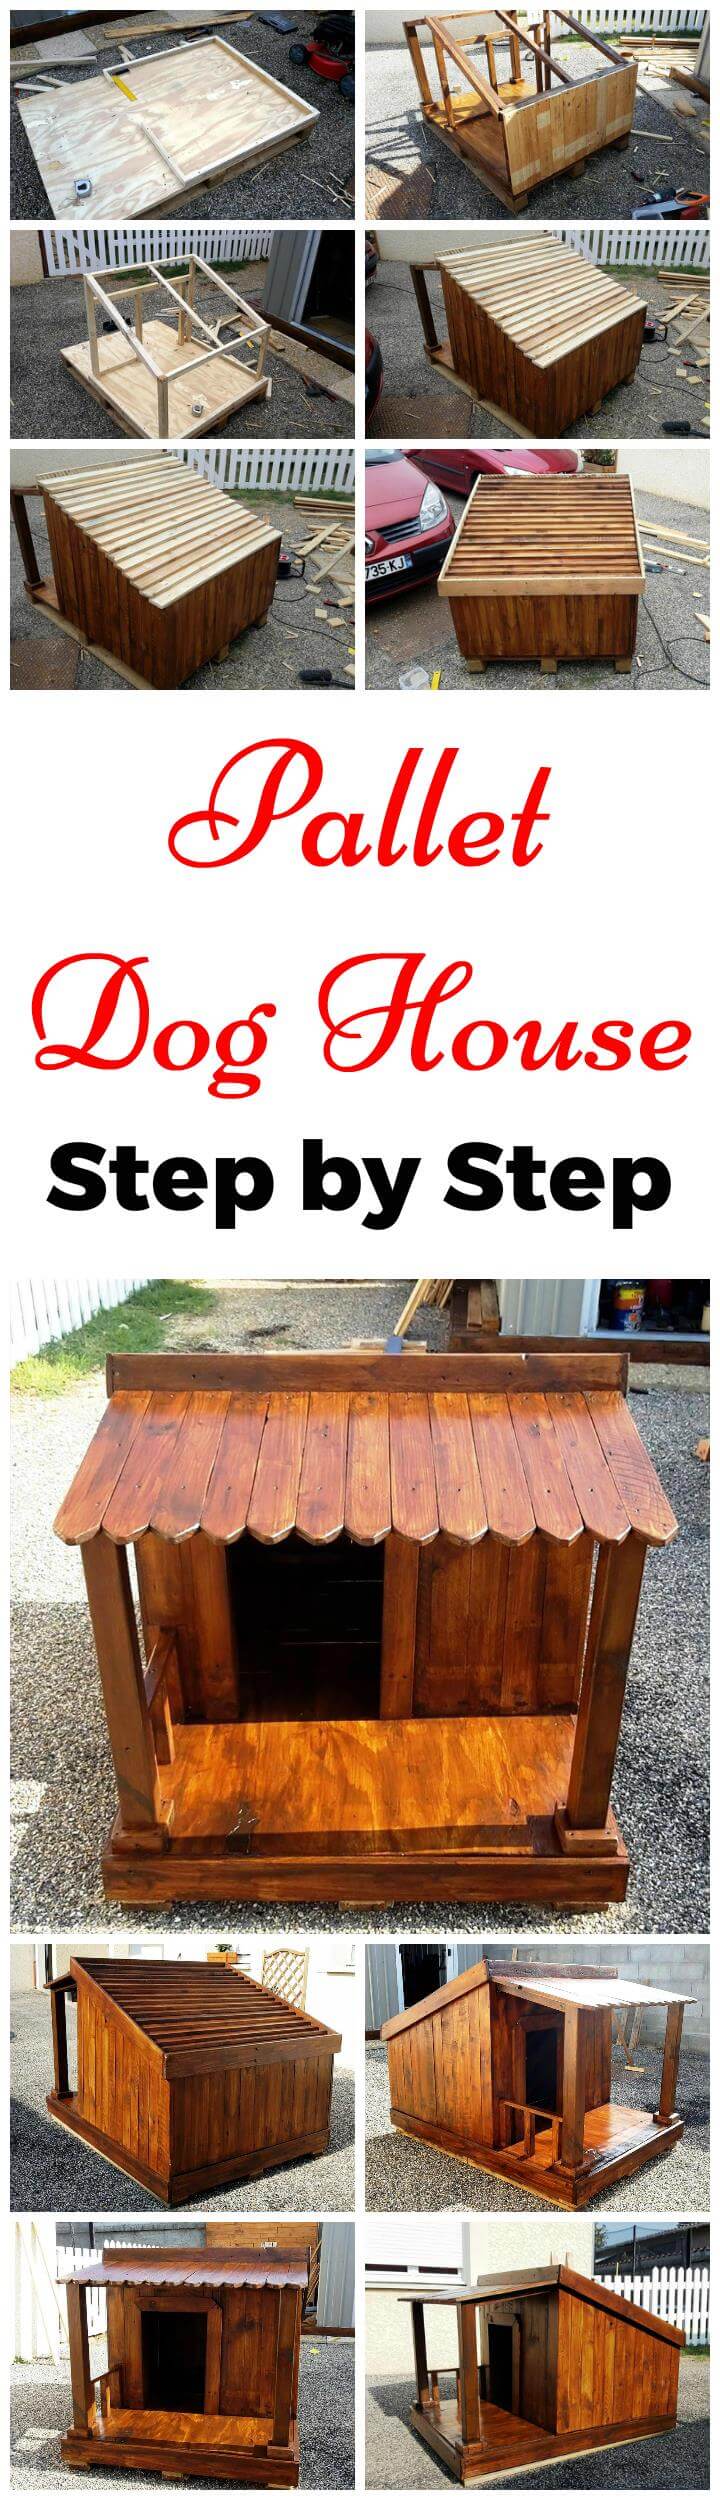 Pallet Dog House - Plano paso a paso